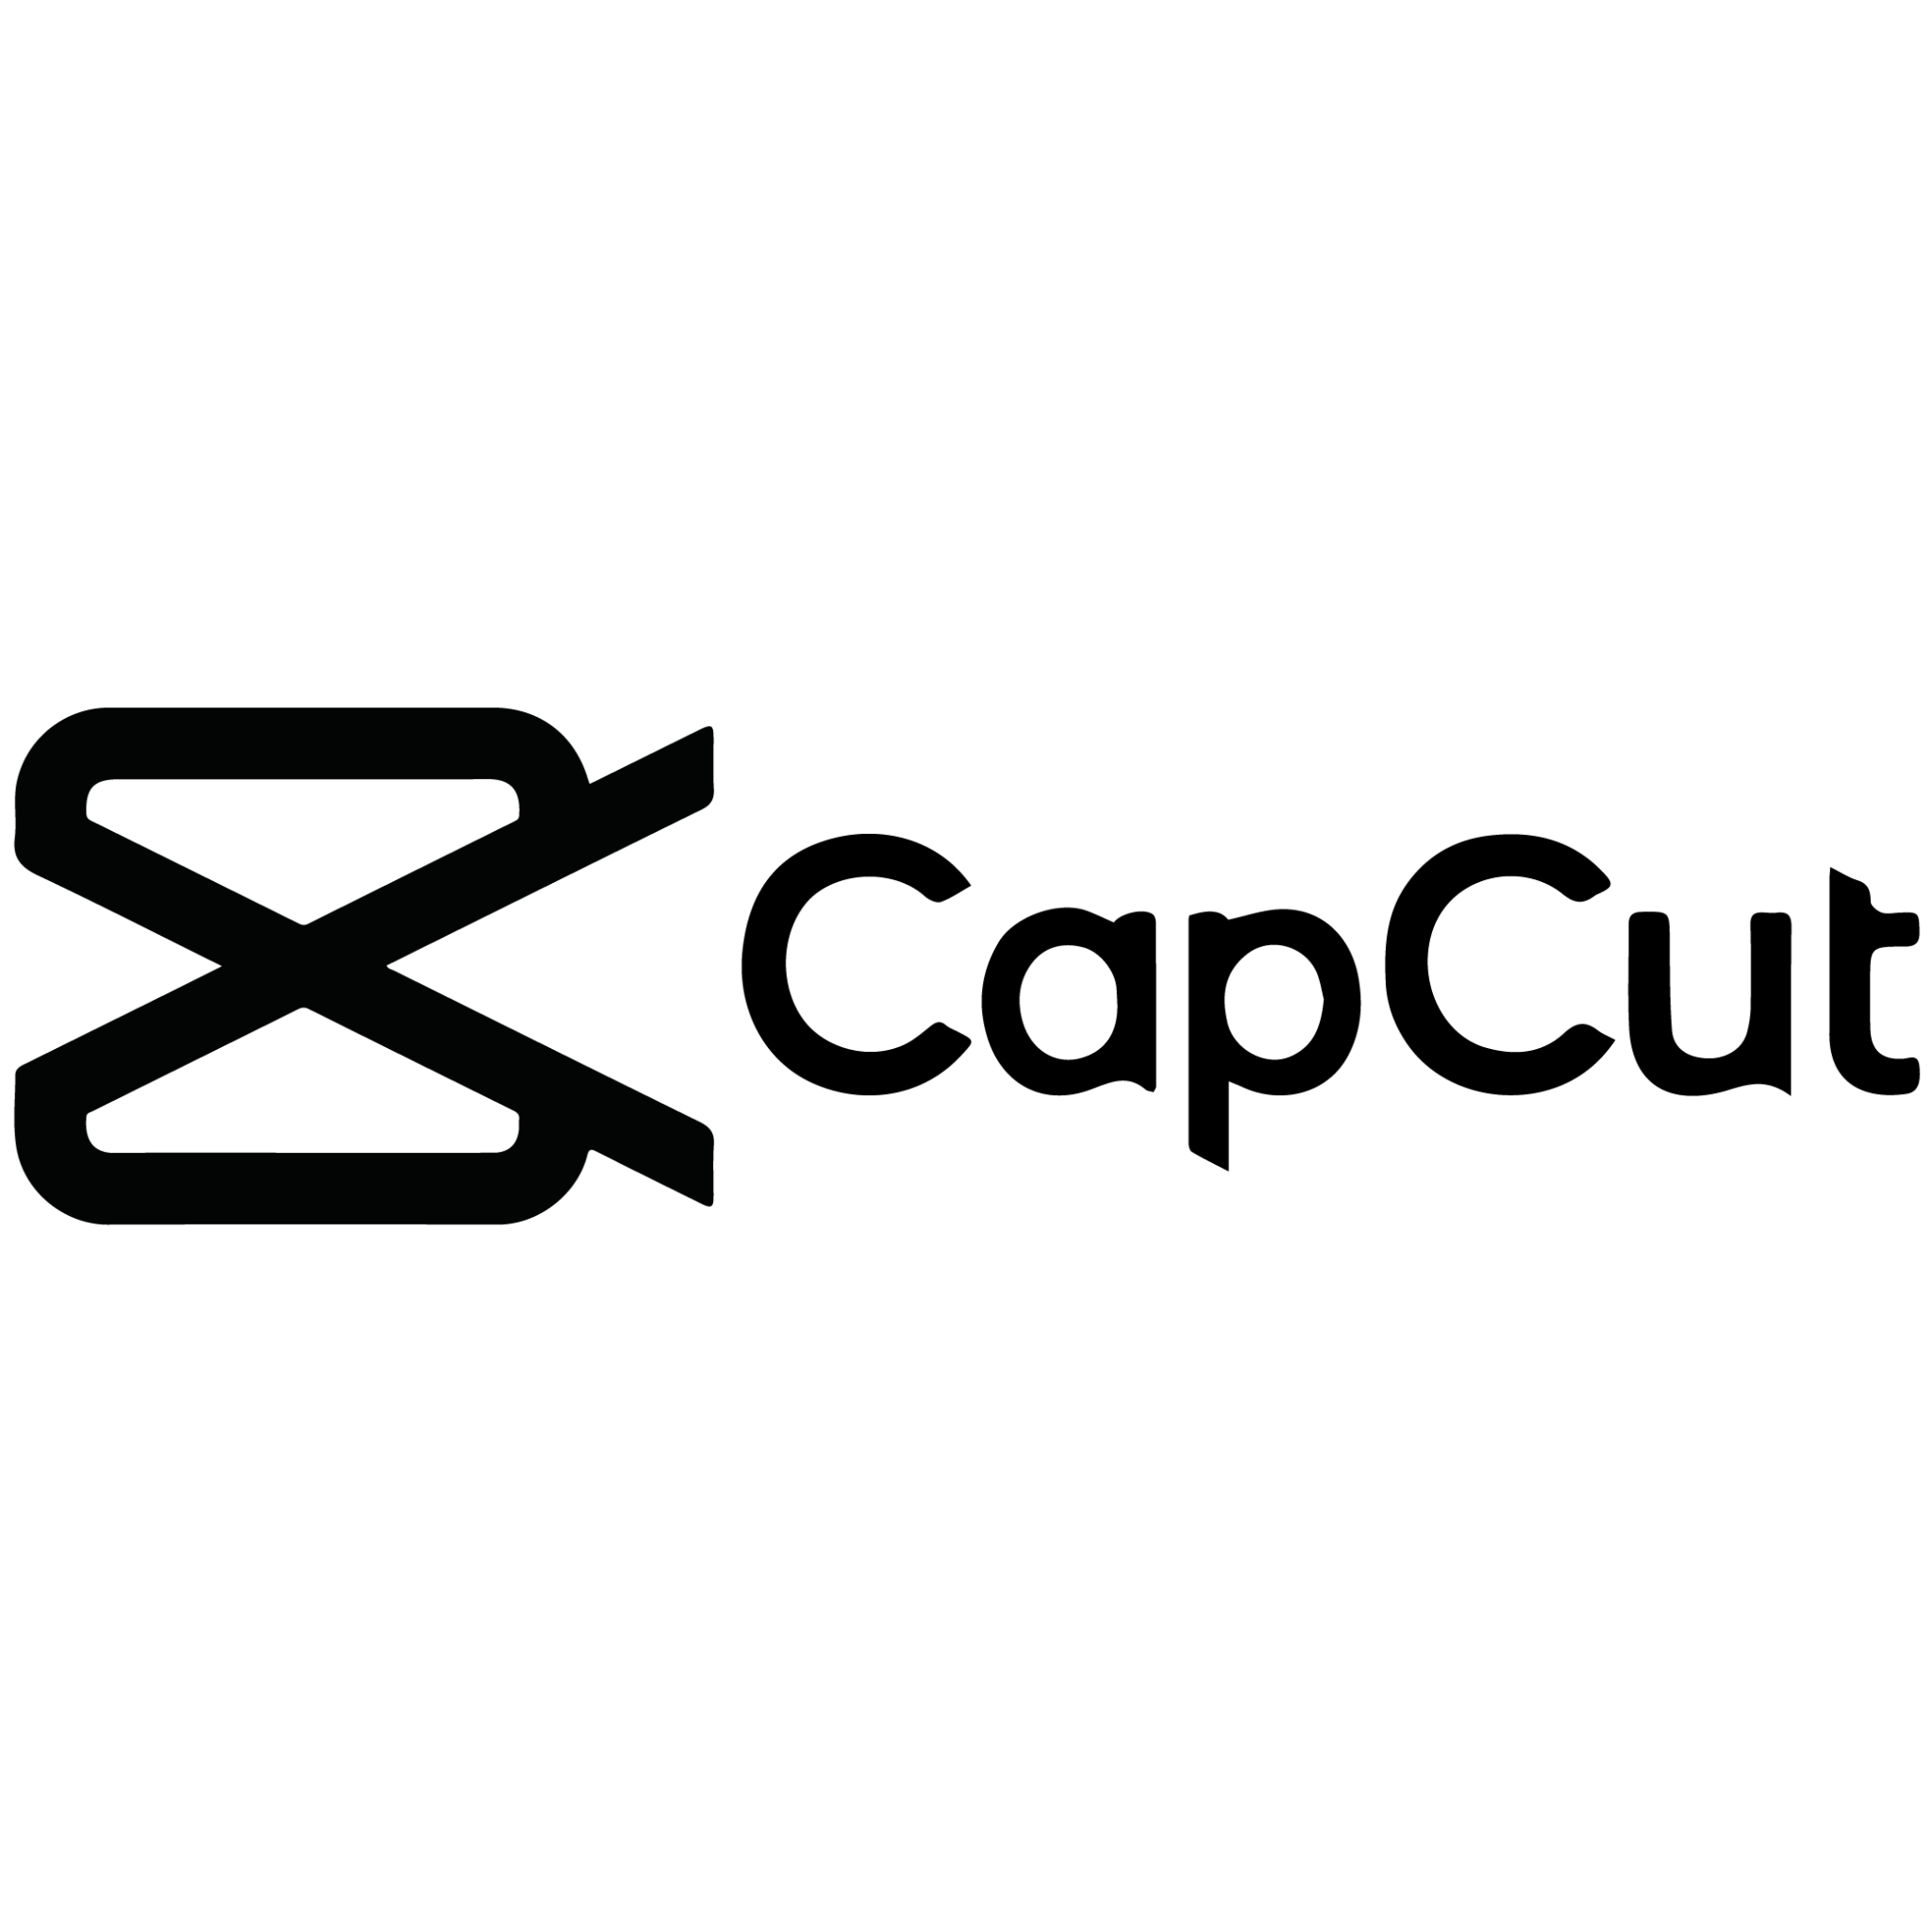 Capcut Logo PNG